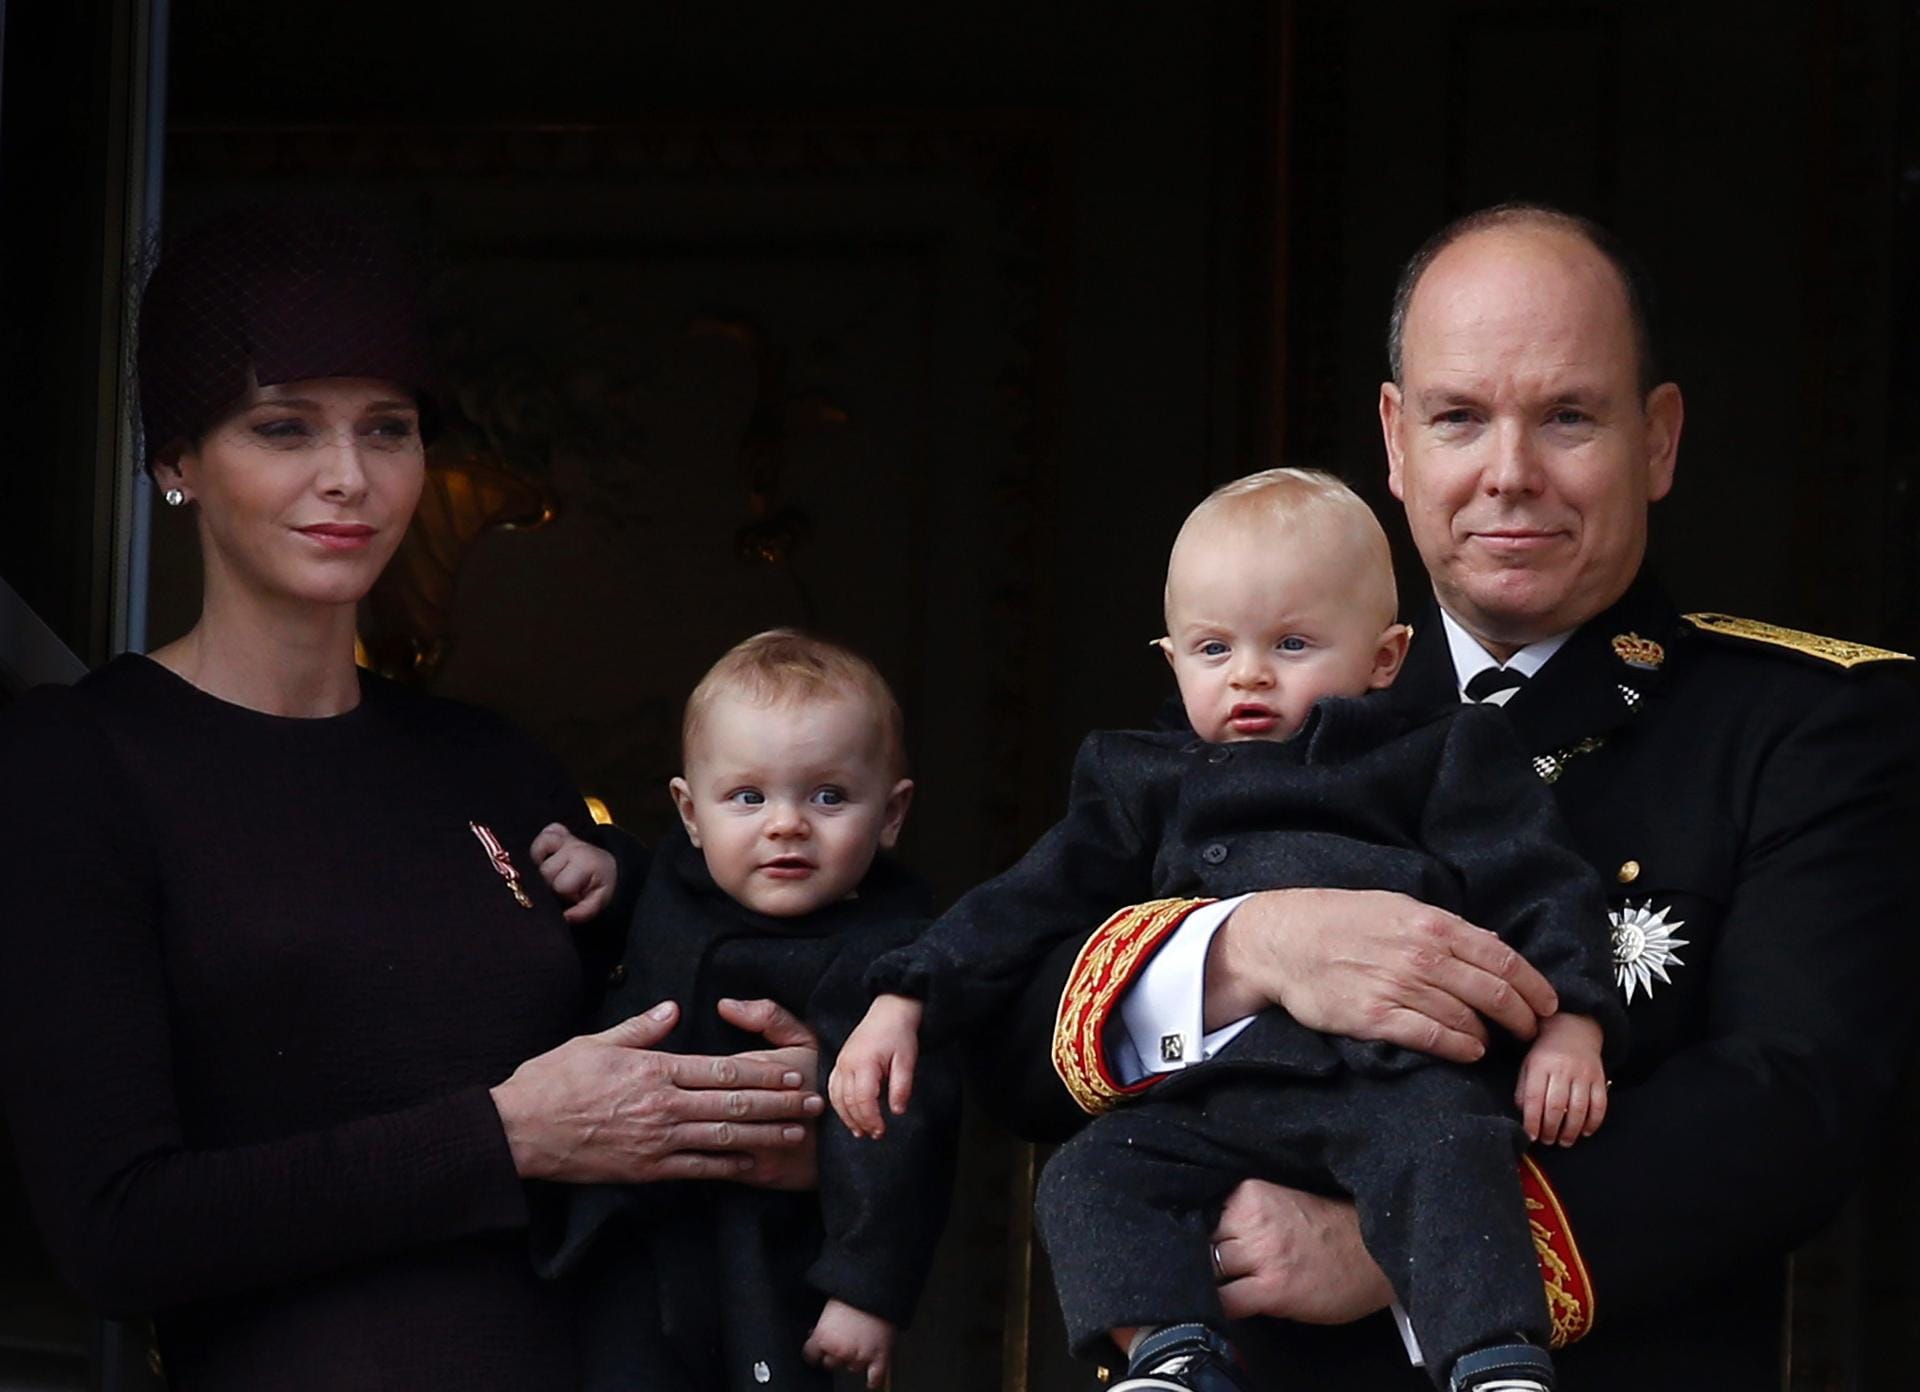 Deutlich seltener als die schwedischen Prinzen und Prinzessinnen werden Monacos Sprösslinge abgelichtet. Hier sind die Zwillinge Prinzessin Gabriella (li.) und Prinz Jacques (re.) beim Nationalfeiertag im November 2015 auf den Armen ihrer Eltern Fürstin Charlène und Fürst Albert zu sehen.